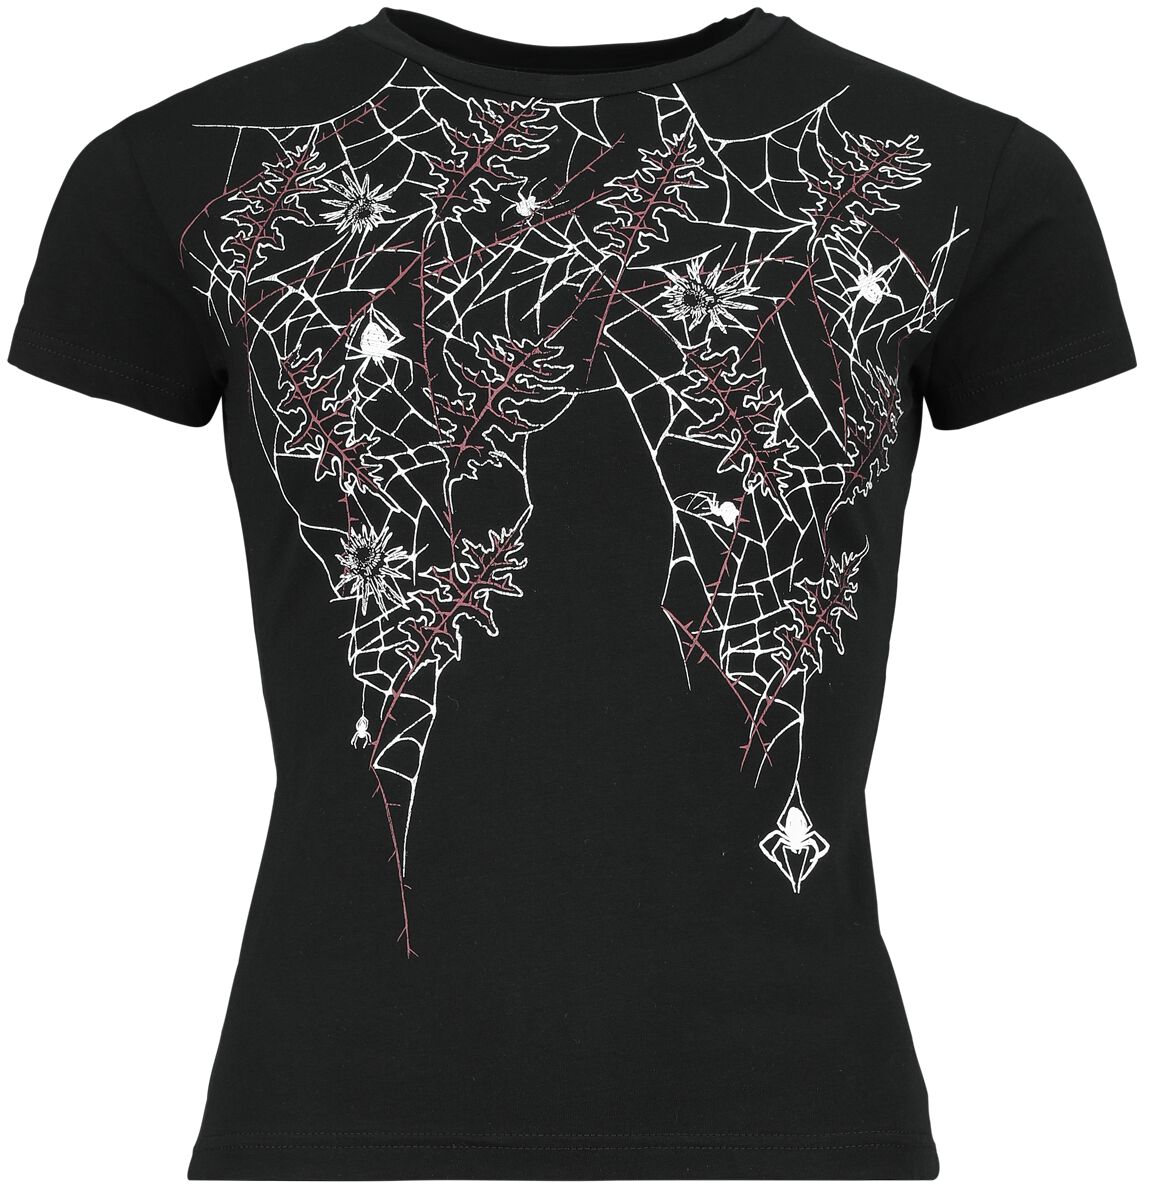 Gothicana by EMP - T-Shirt mit Spinnennetzen - T-Shirt - schwarz - EMP Exklusiv!